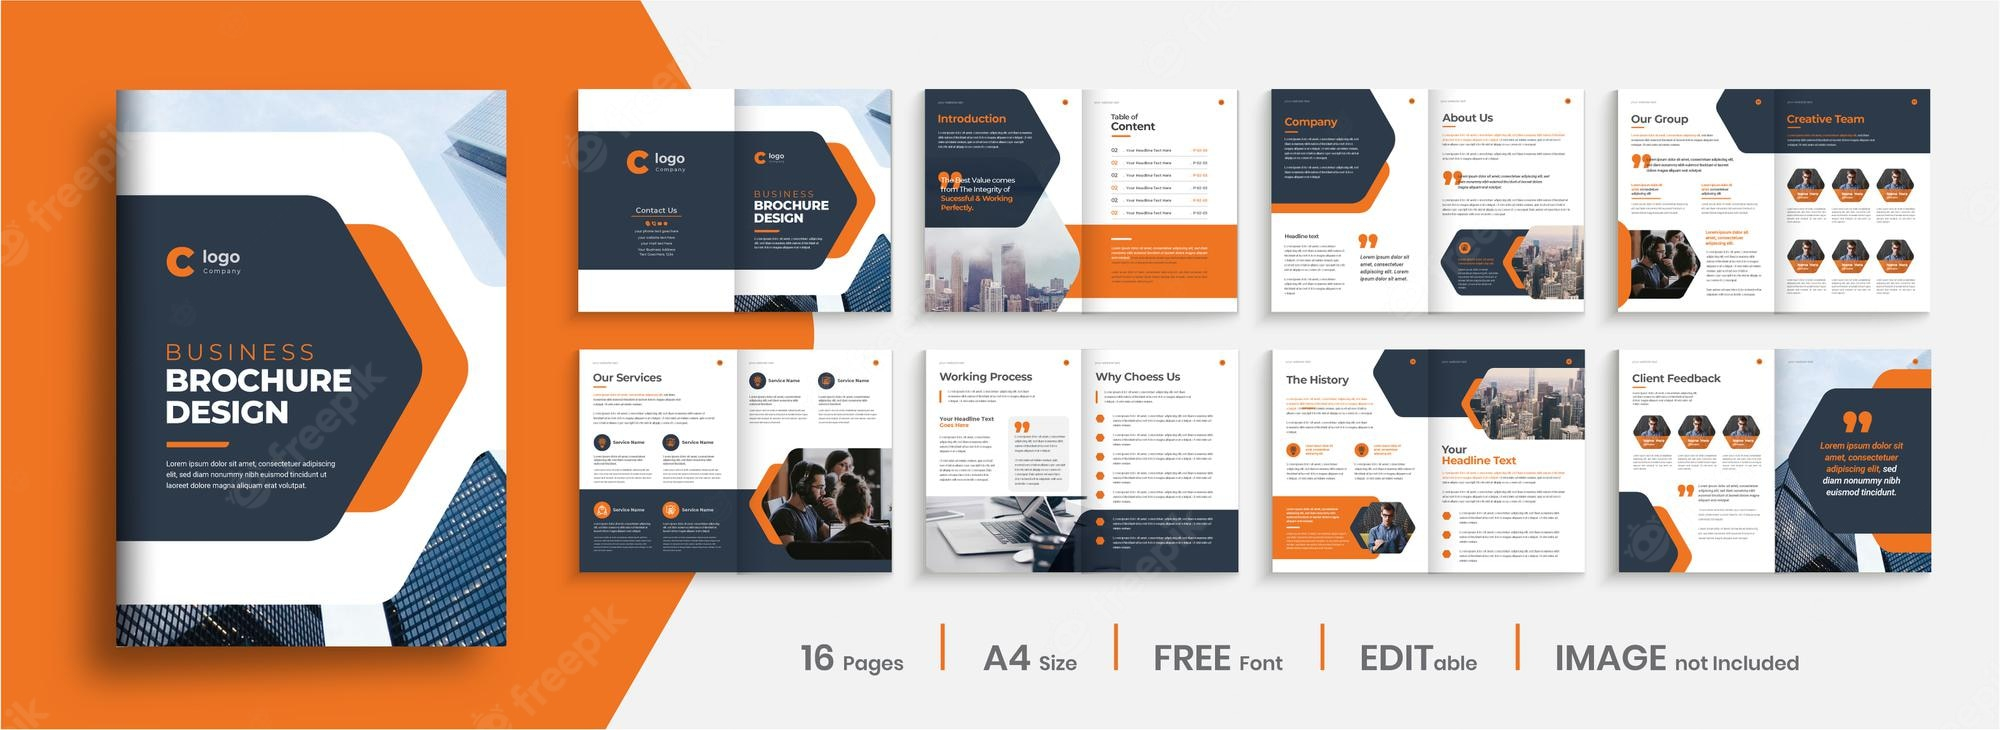 Brochure Images - Free Download on Freepik Inside E Brochure Design Templates